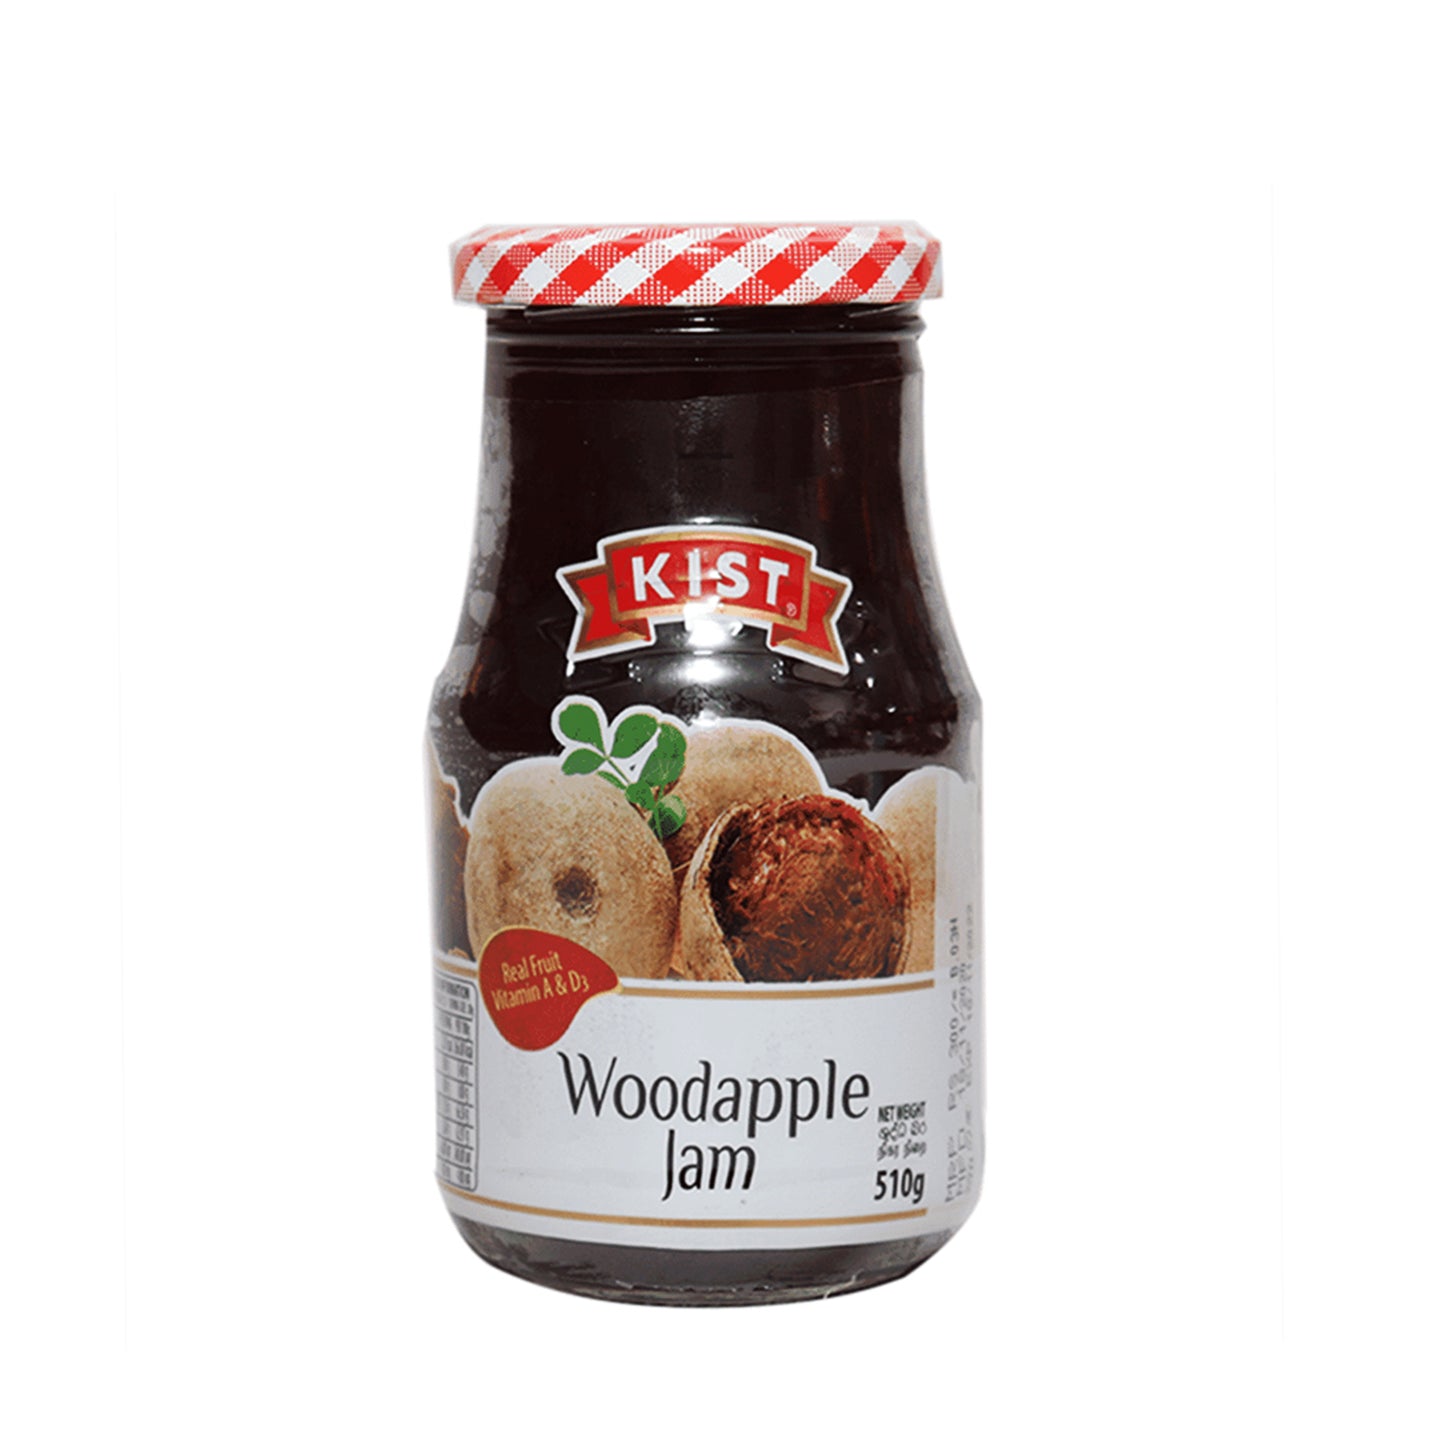 Kist Wood Apple Jam (510 g)